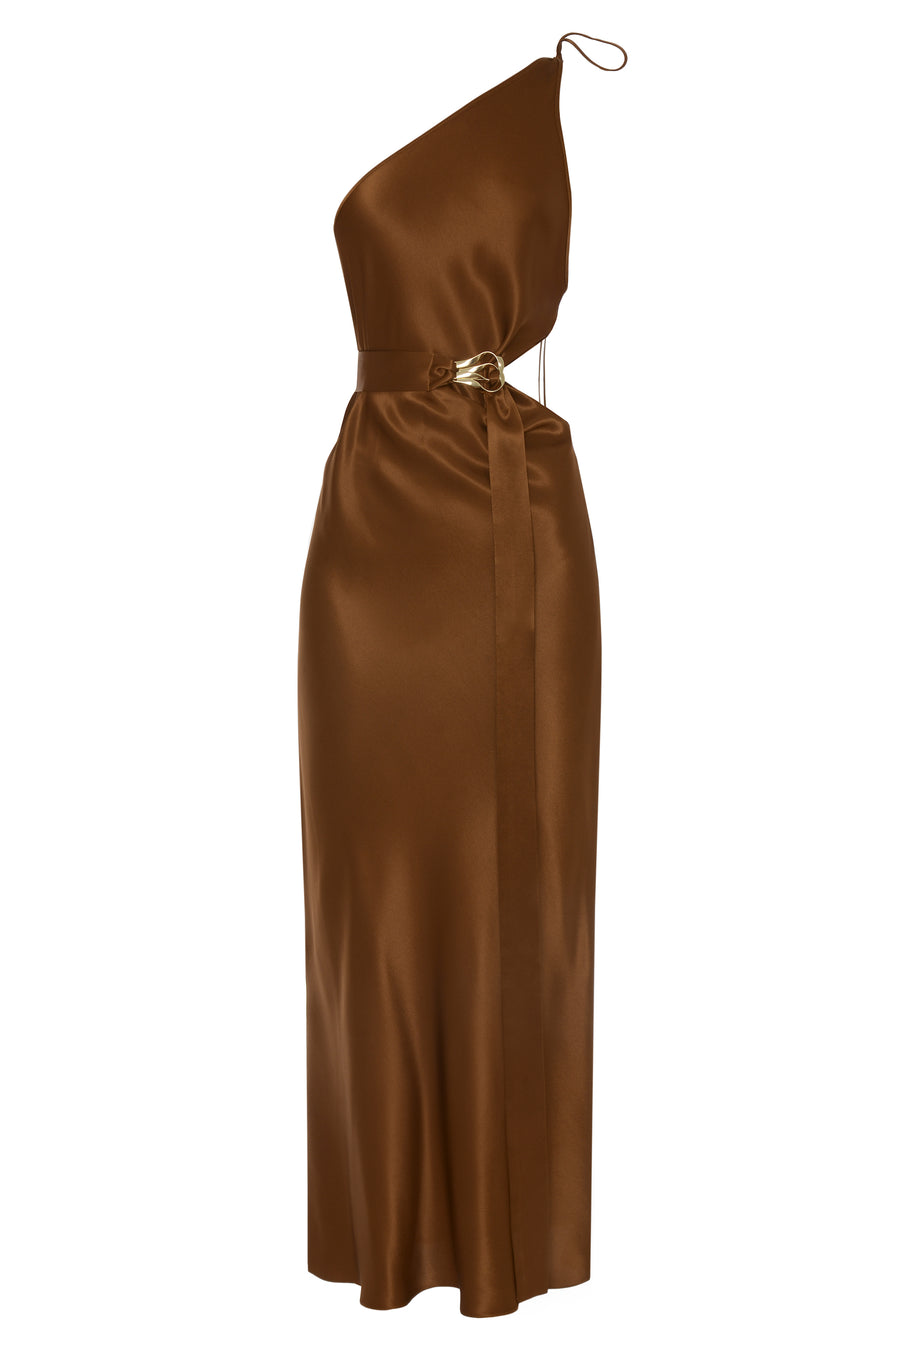 One Shoulder Satin Brown Dress